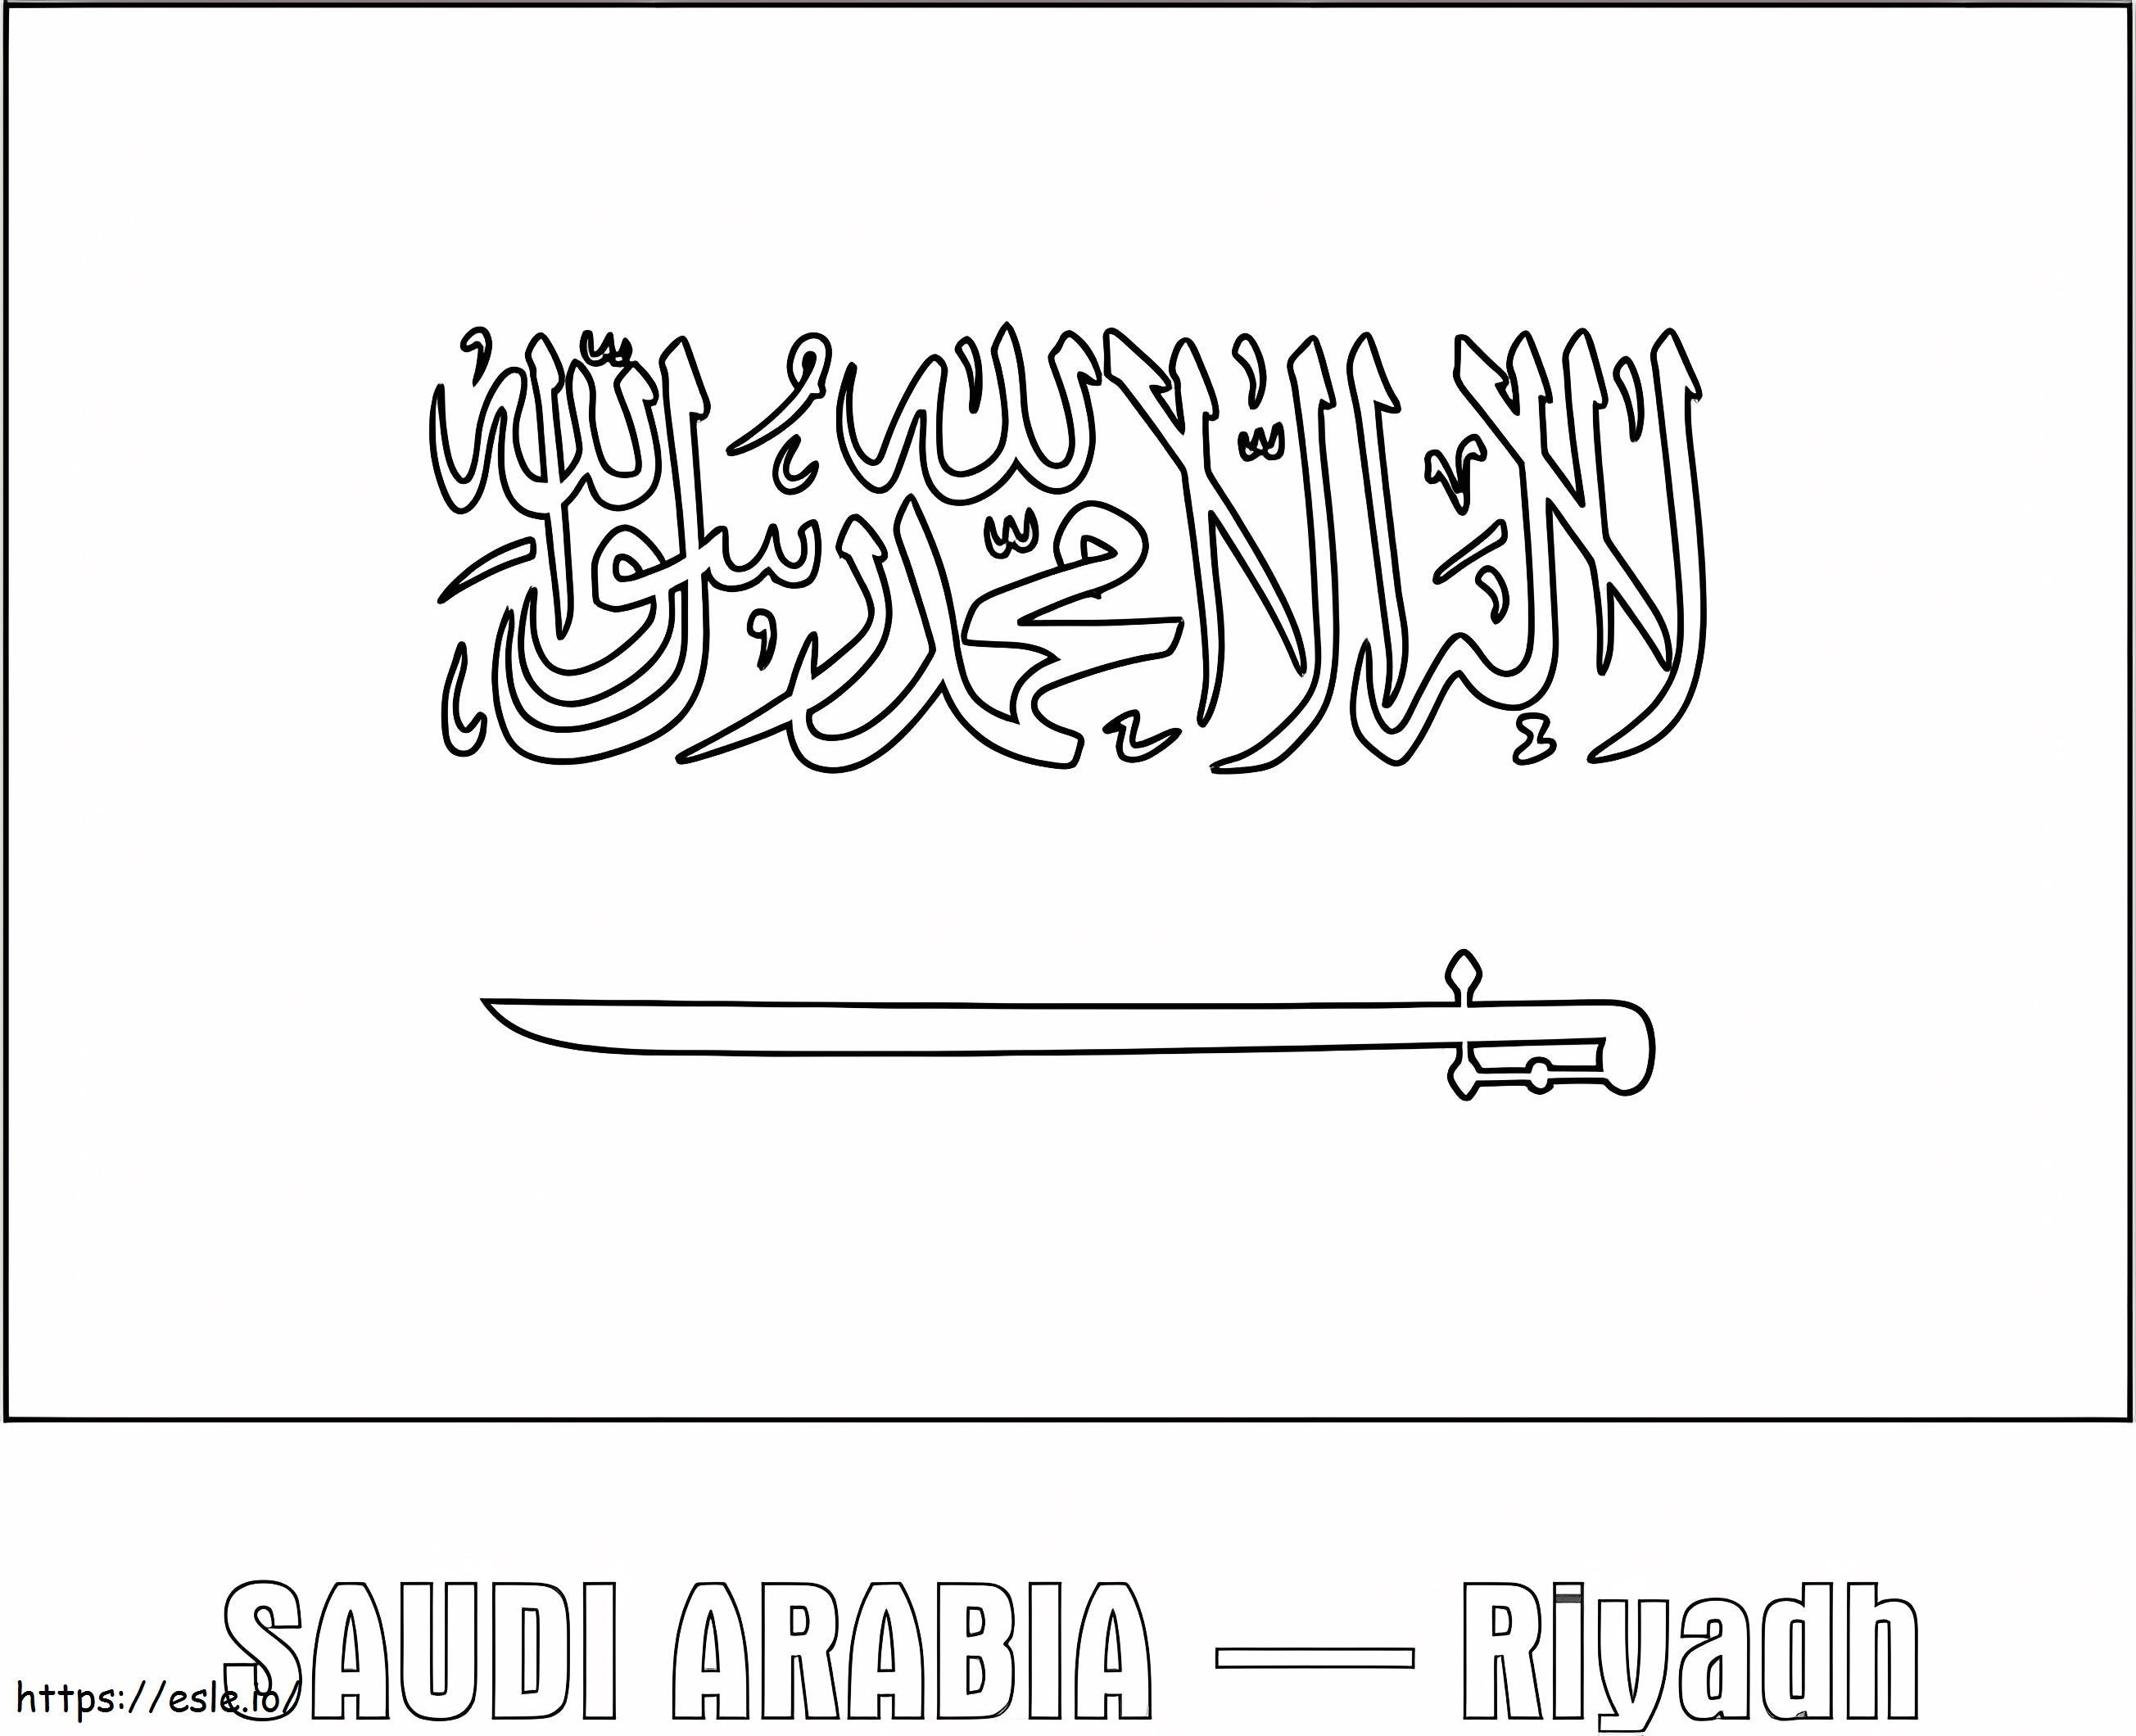 Flaga Arabii Saudyjskiej 1 kolorowanka